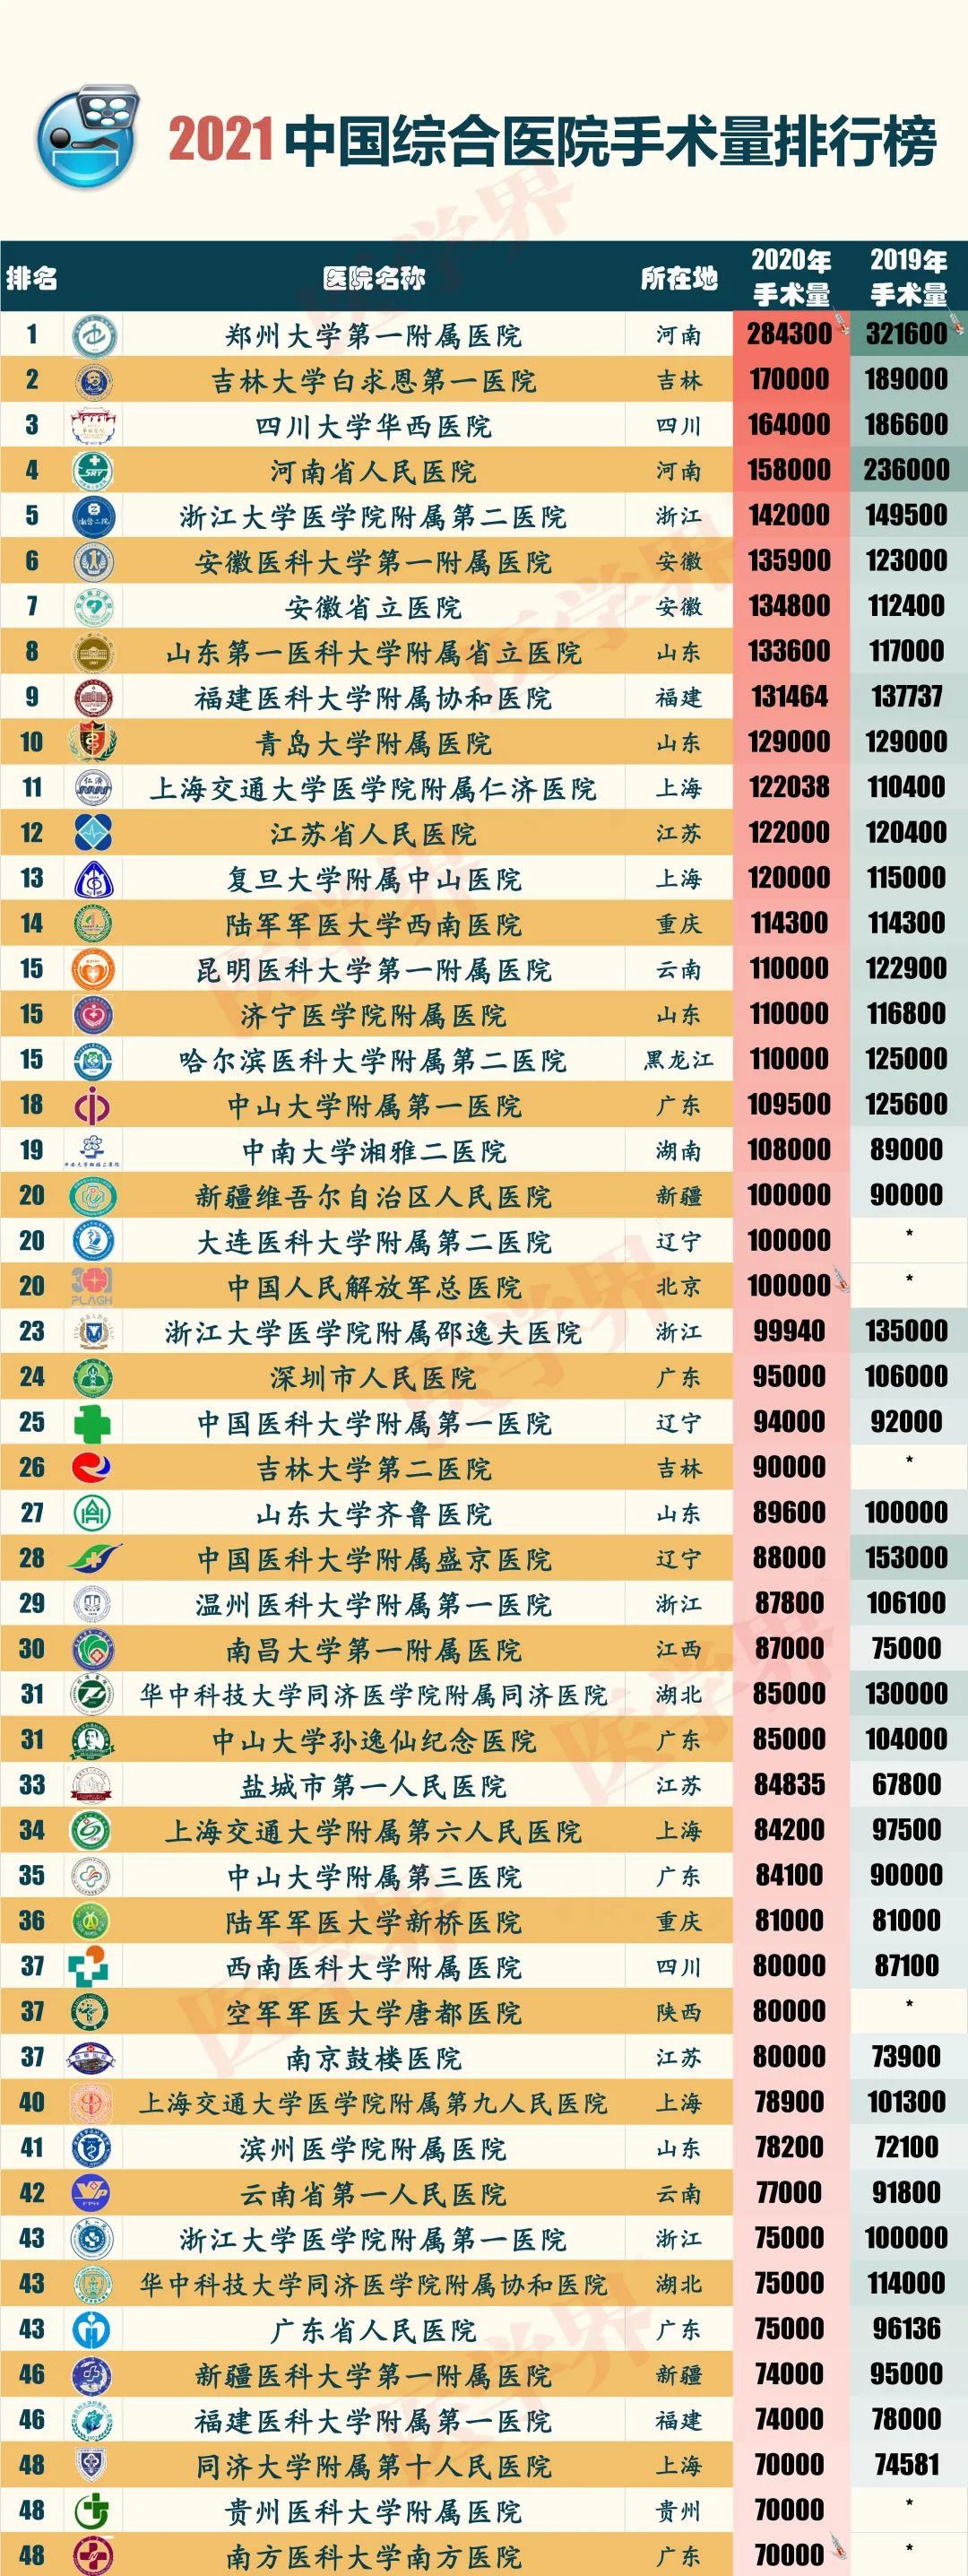 2021中国医院百强榜公布图1